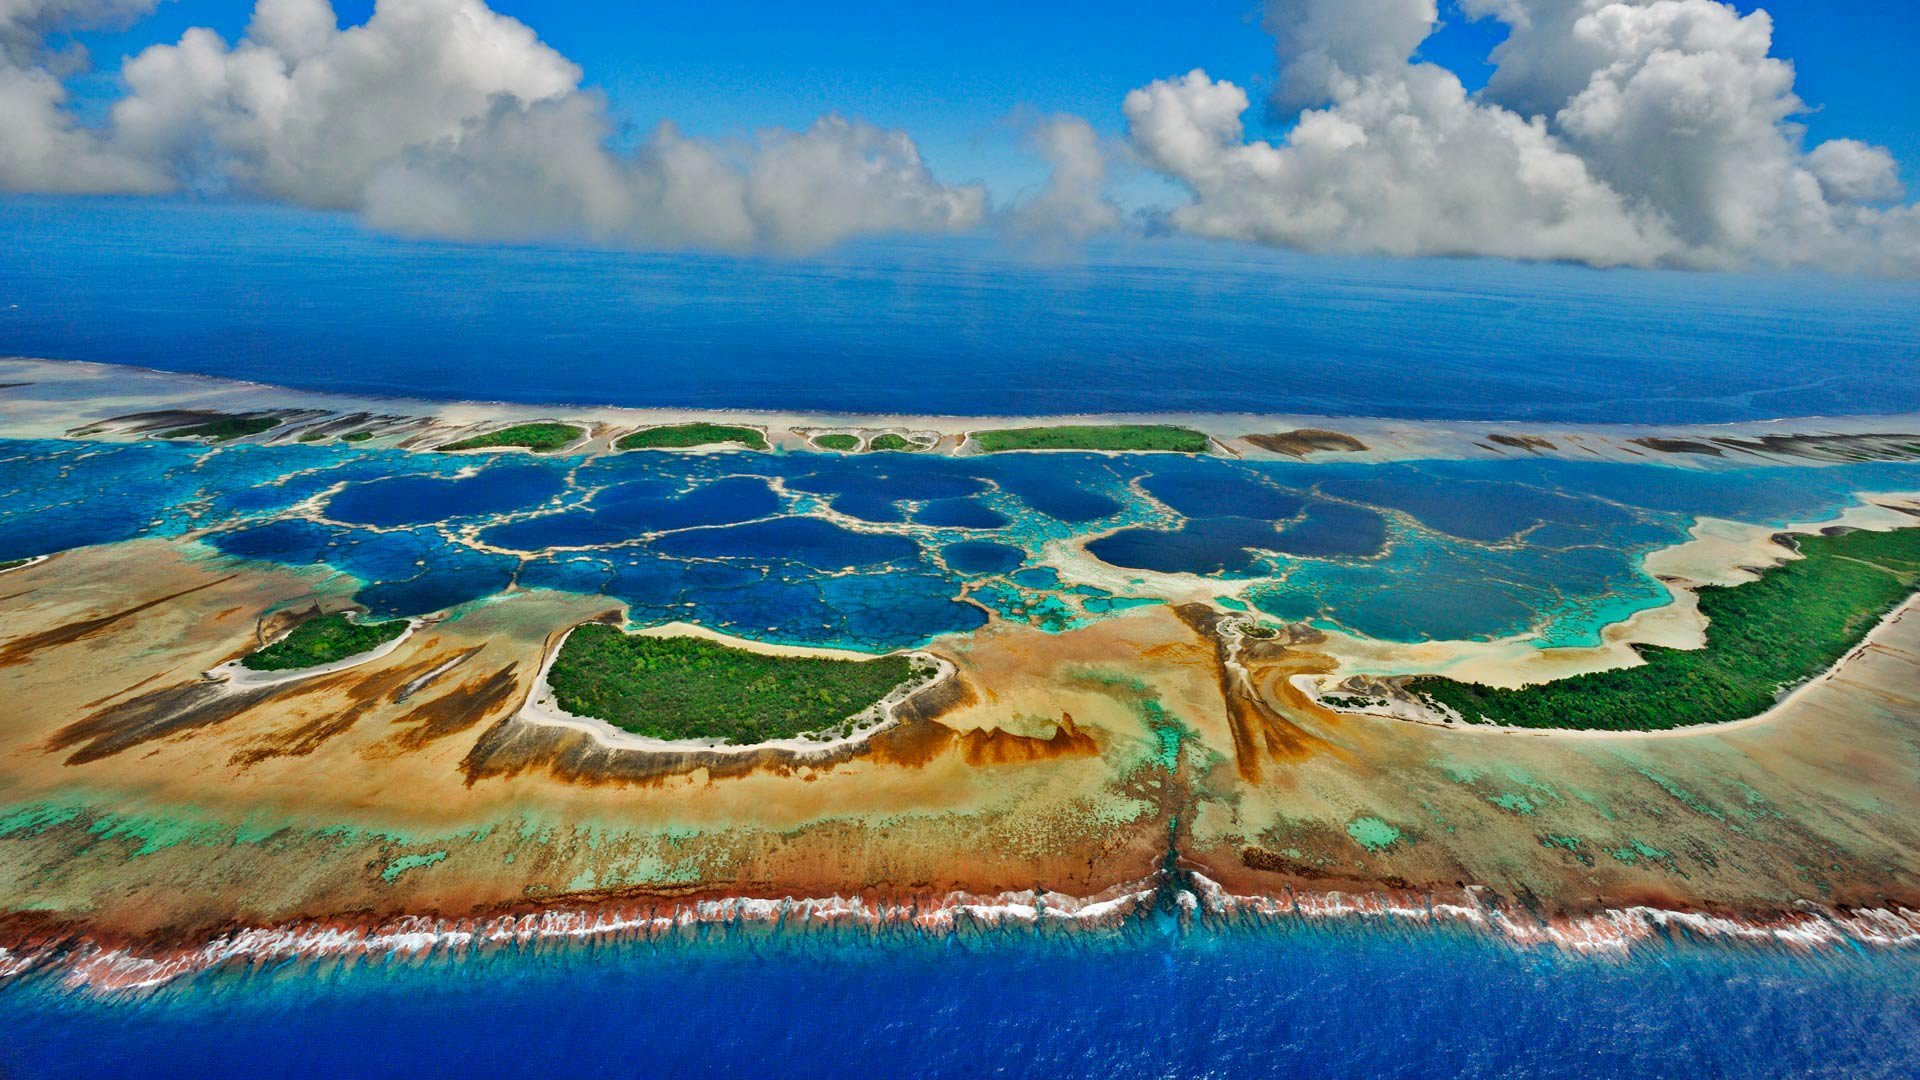 Страна состоящая из островов. Атолл Кирибати. Остров Каролайн, Кирибати. Тарава Кирибати. Каролайн Атолл.